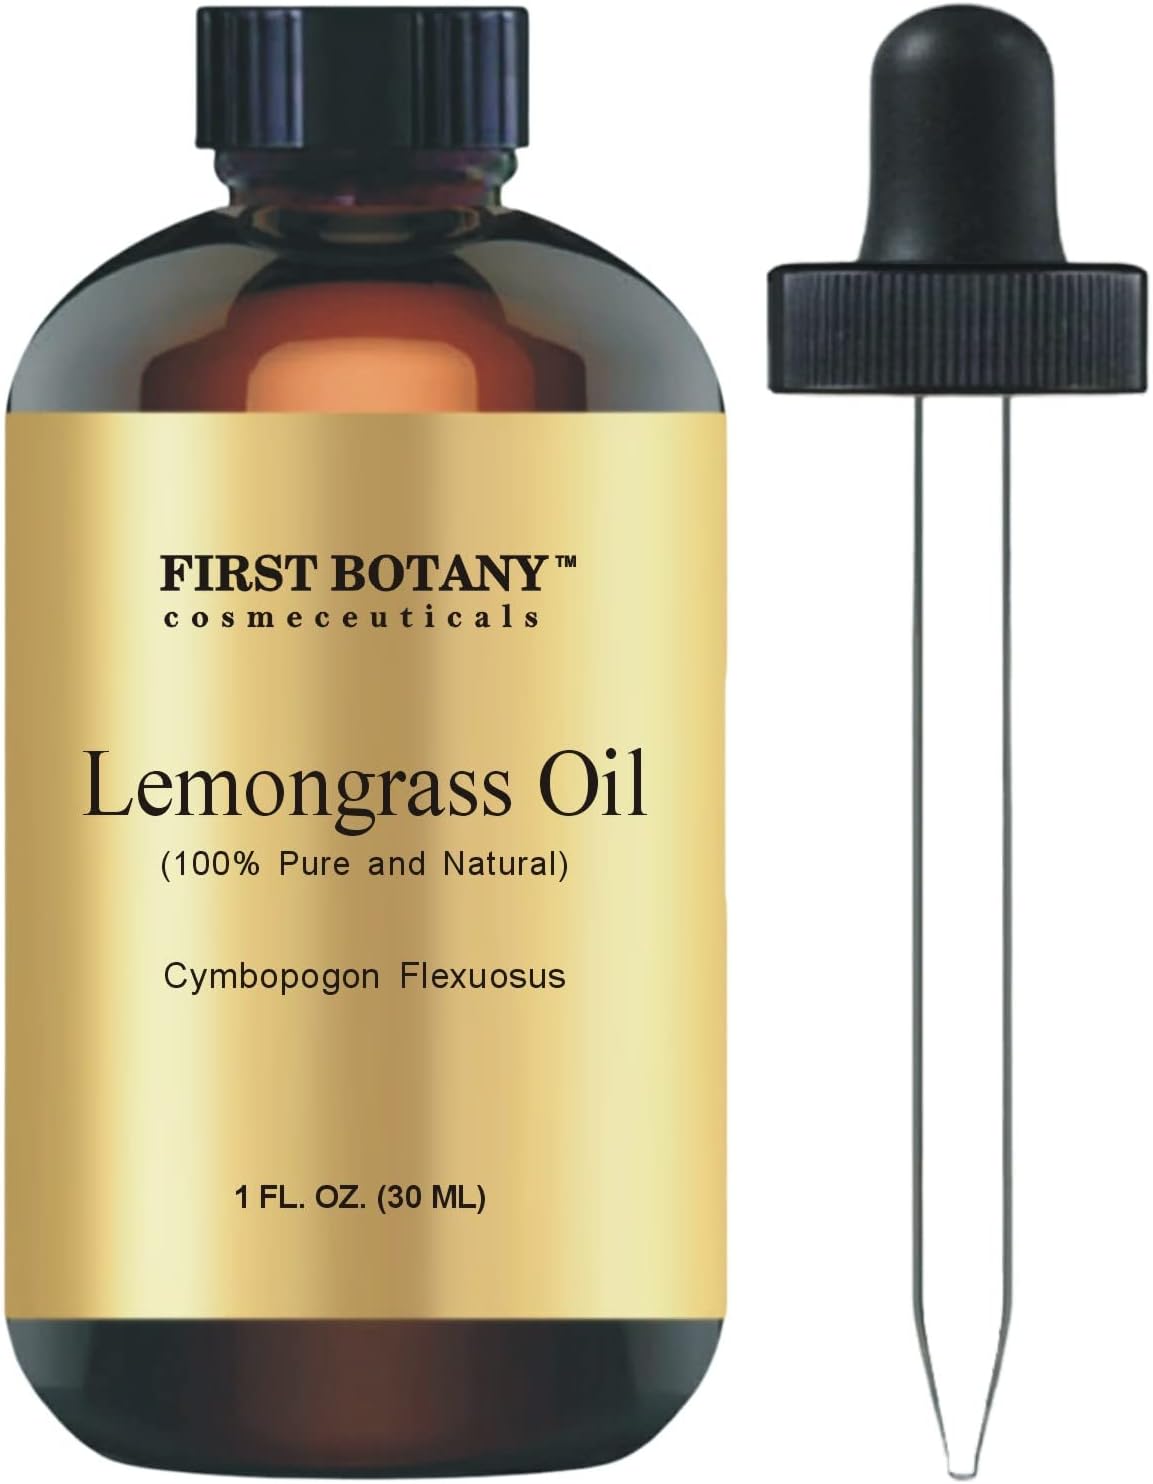 100% Pure Lemongrass Essential Oil - Premium Lemongrass Oil for Aromat